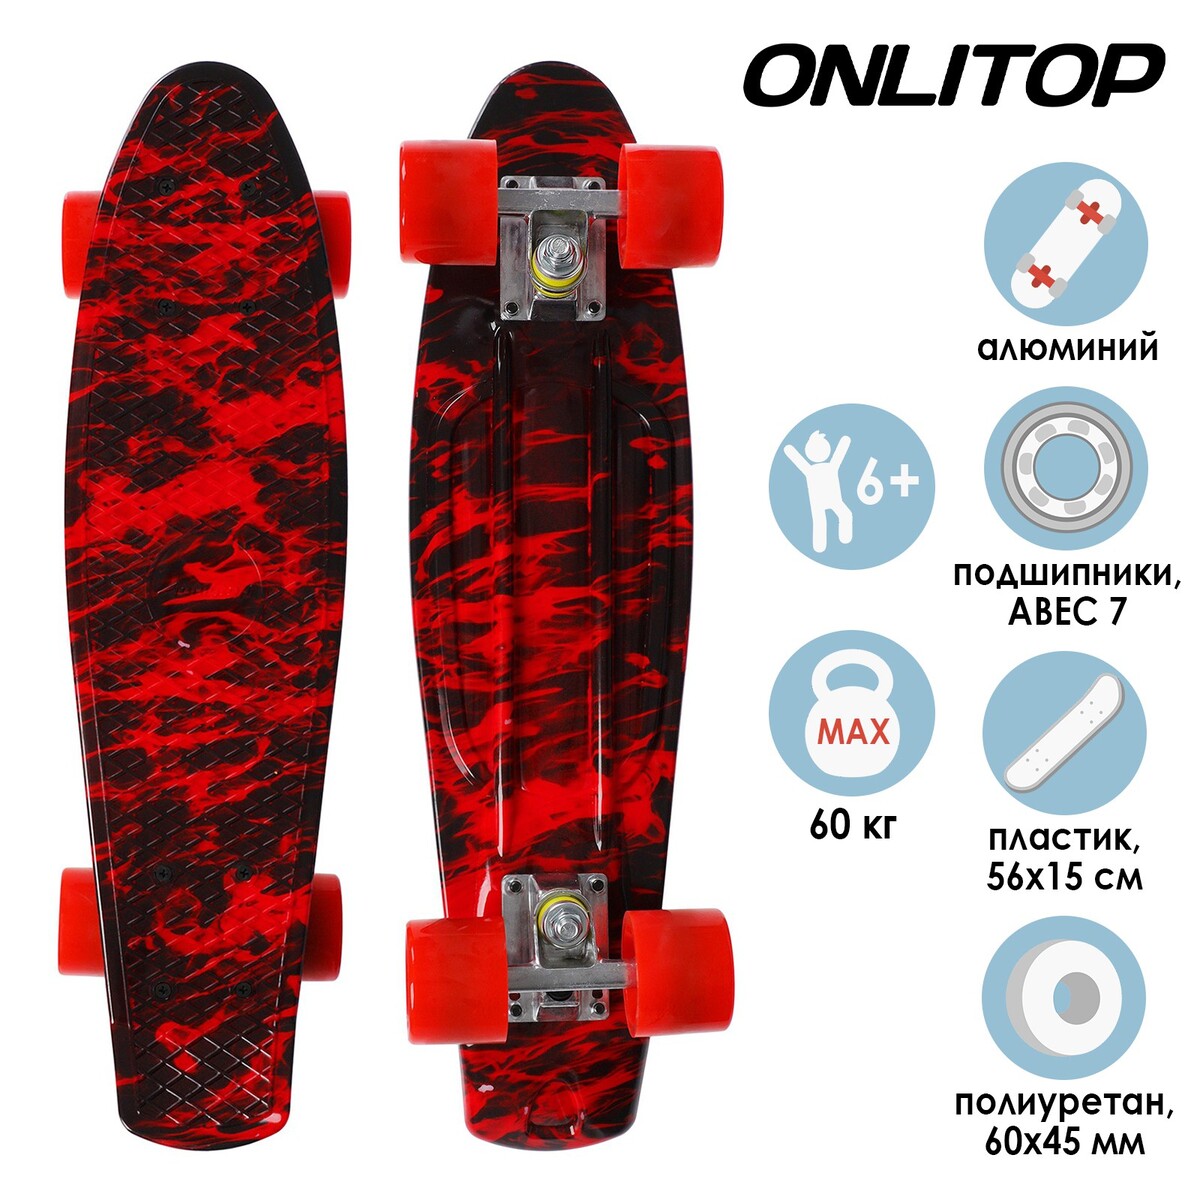 Скейтборд onlitop r2206, 56х15 см, колеса pu, аbec 7, алюминиевая рама, цвет красный